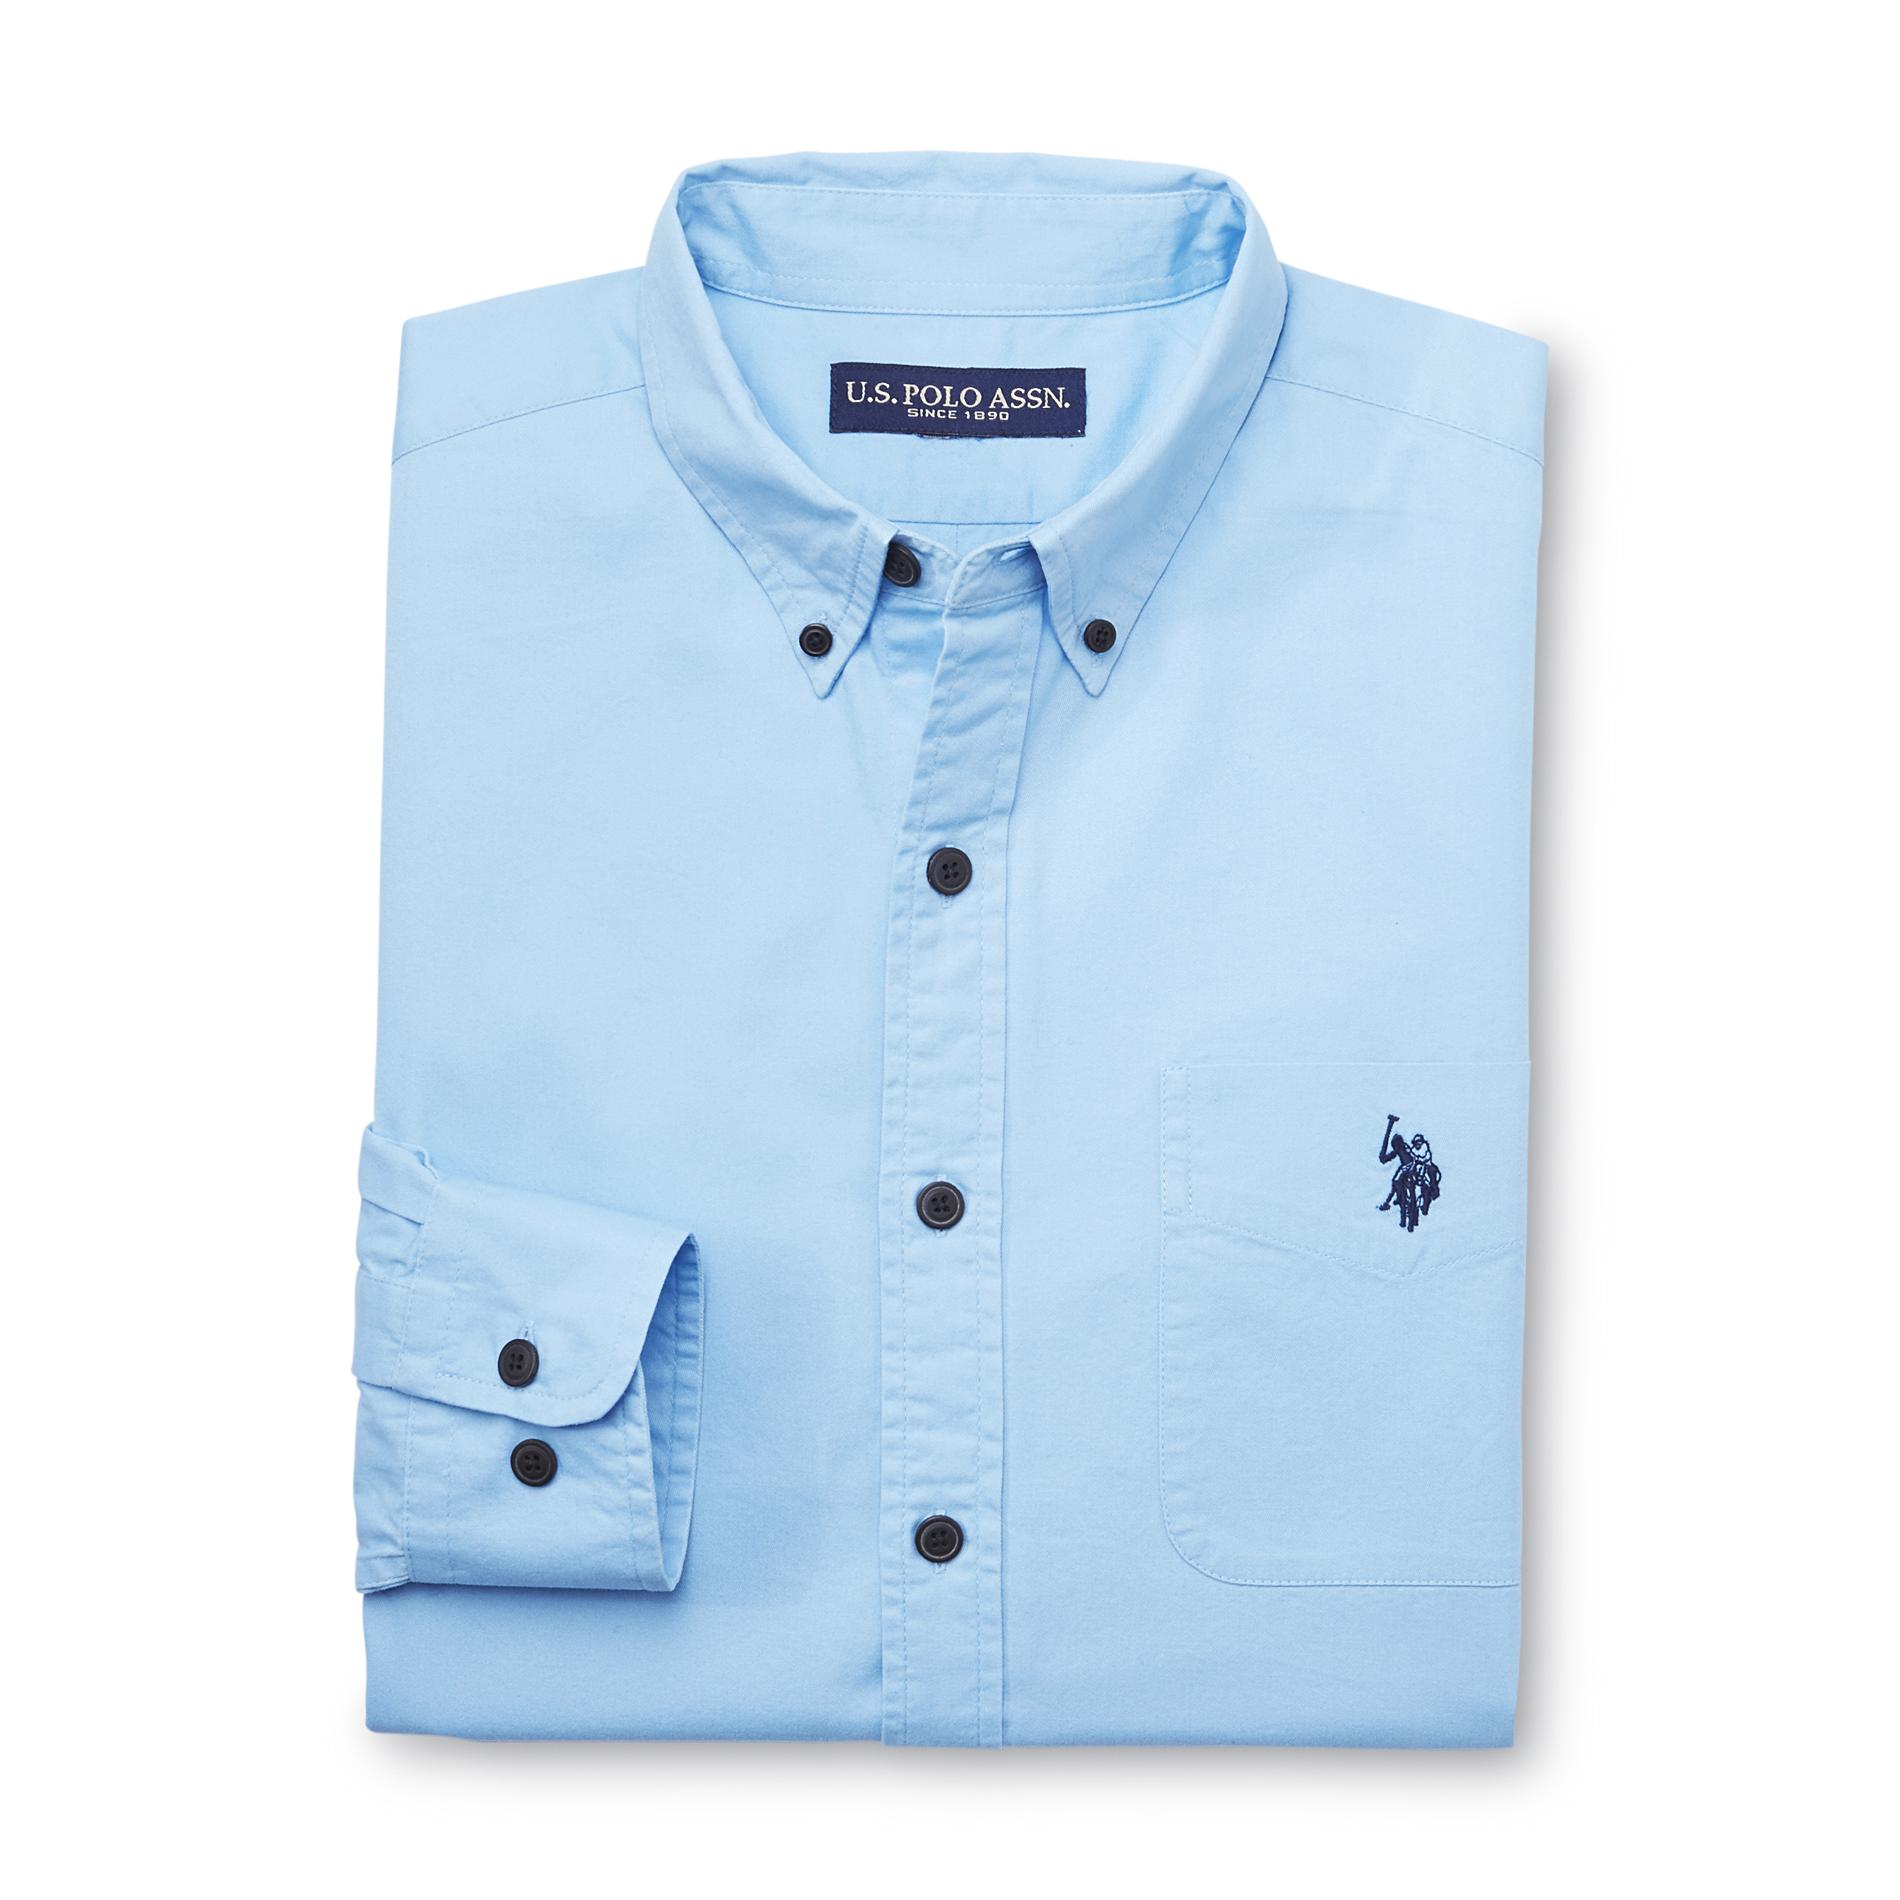 U.S. Polo Assn. Men's Long-Sleeve Twill Shirt